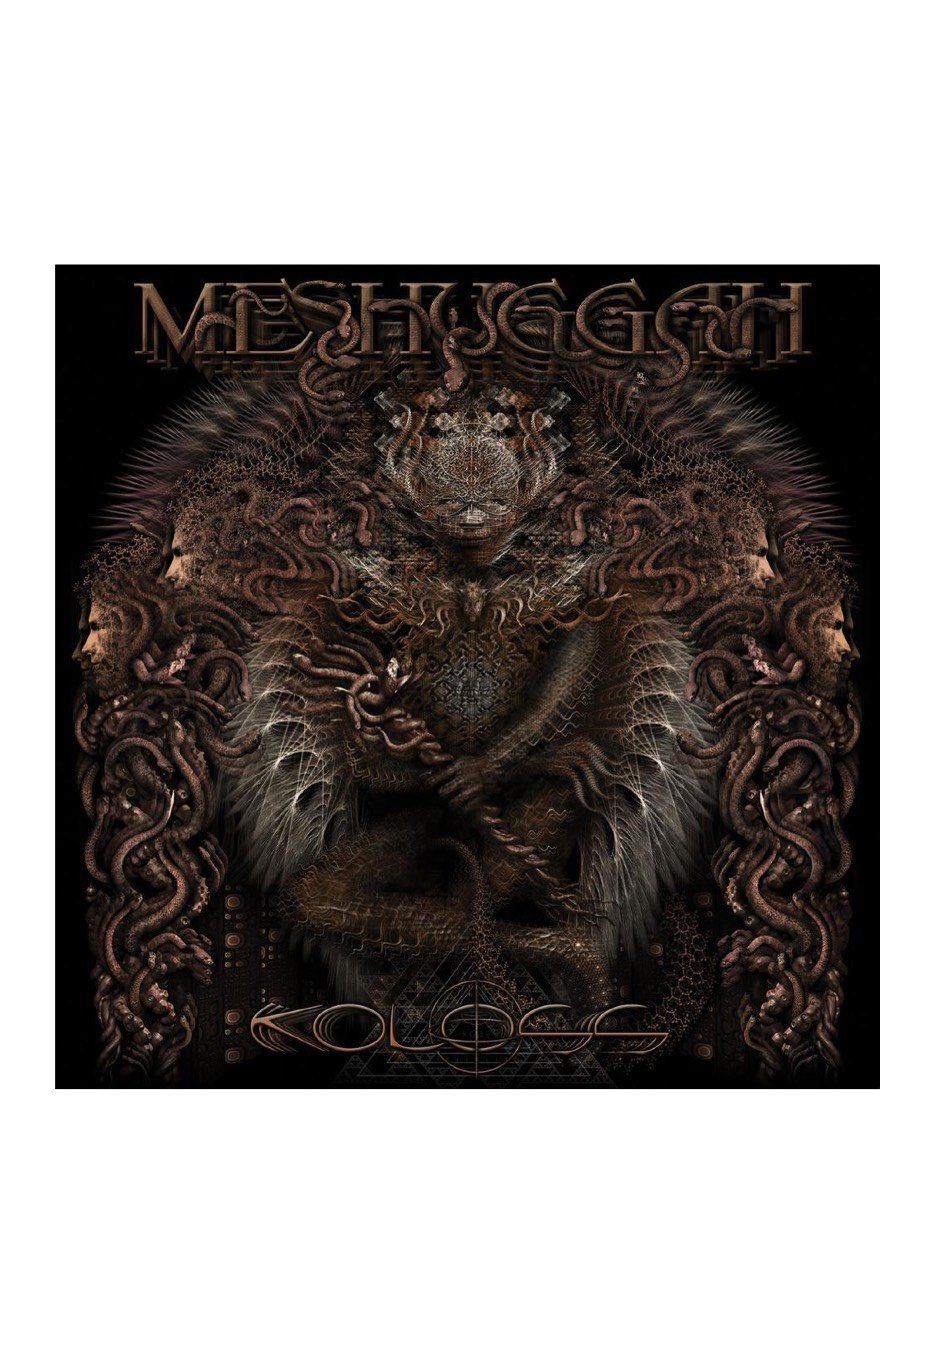 Meshuggah - Koloss - CD